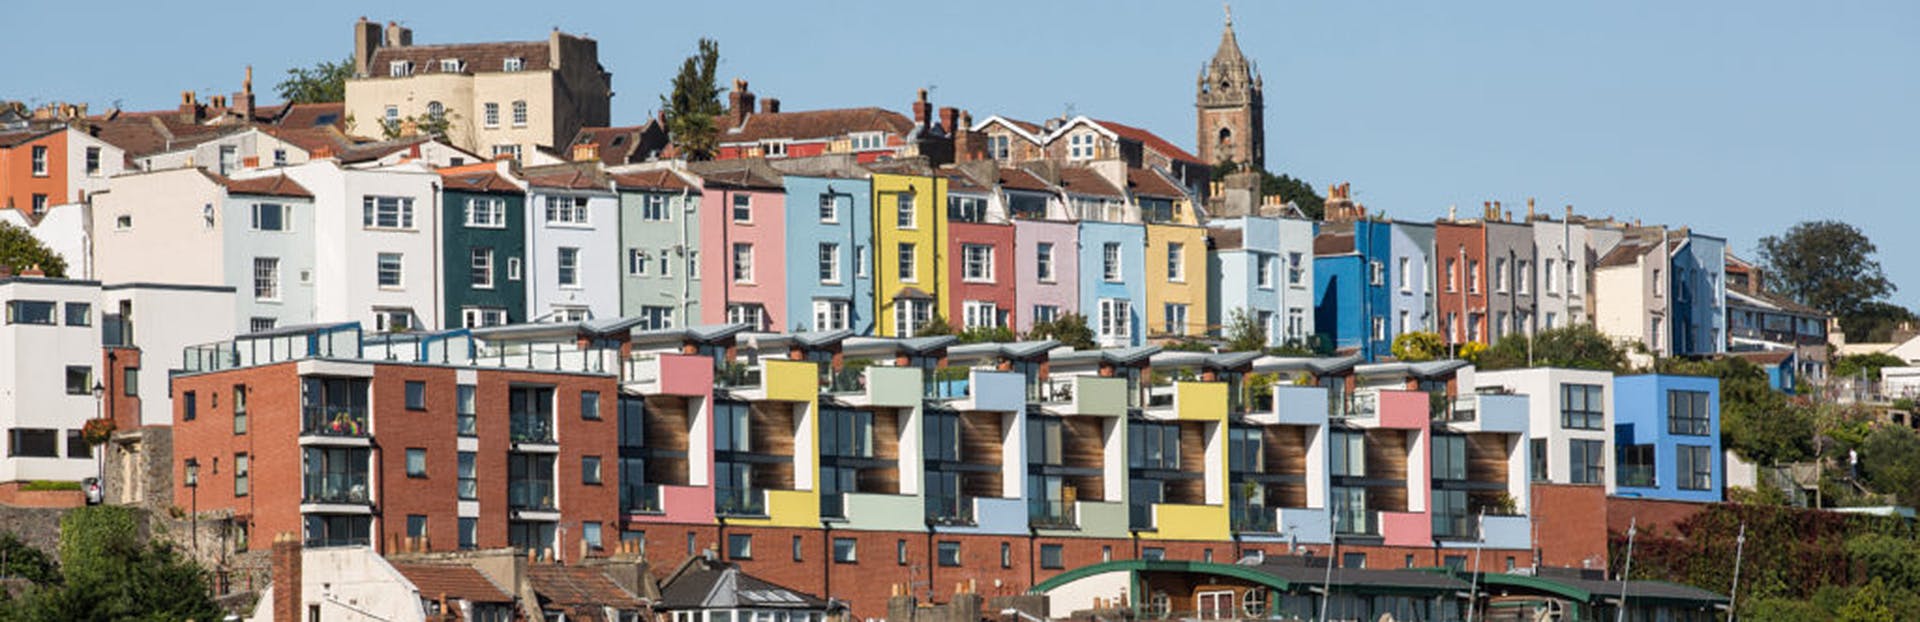 Explorez le meilleur de la vieille ville de Bristol lors d'une visite audio autoguidée